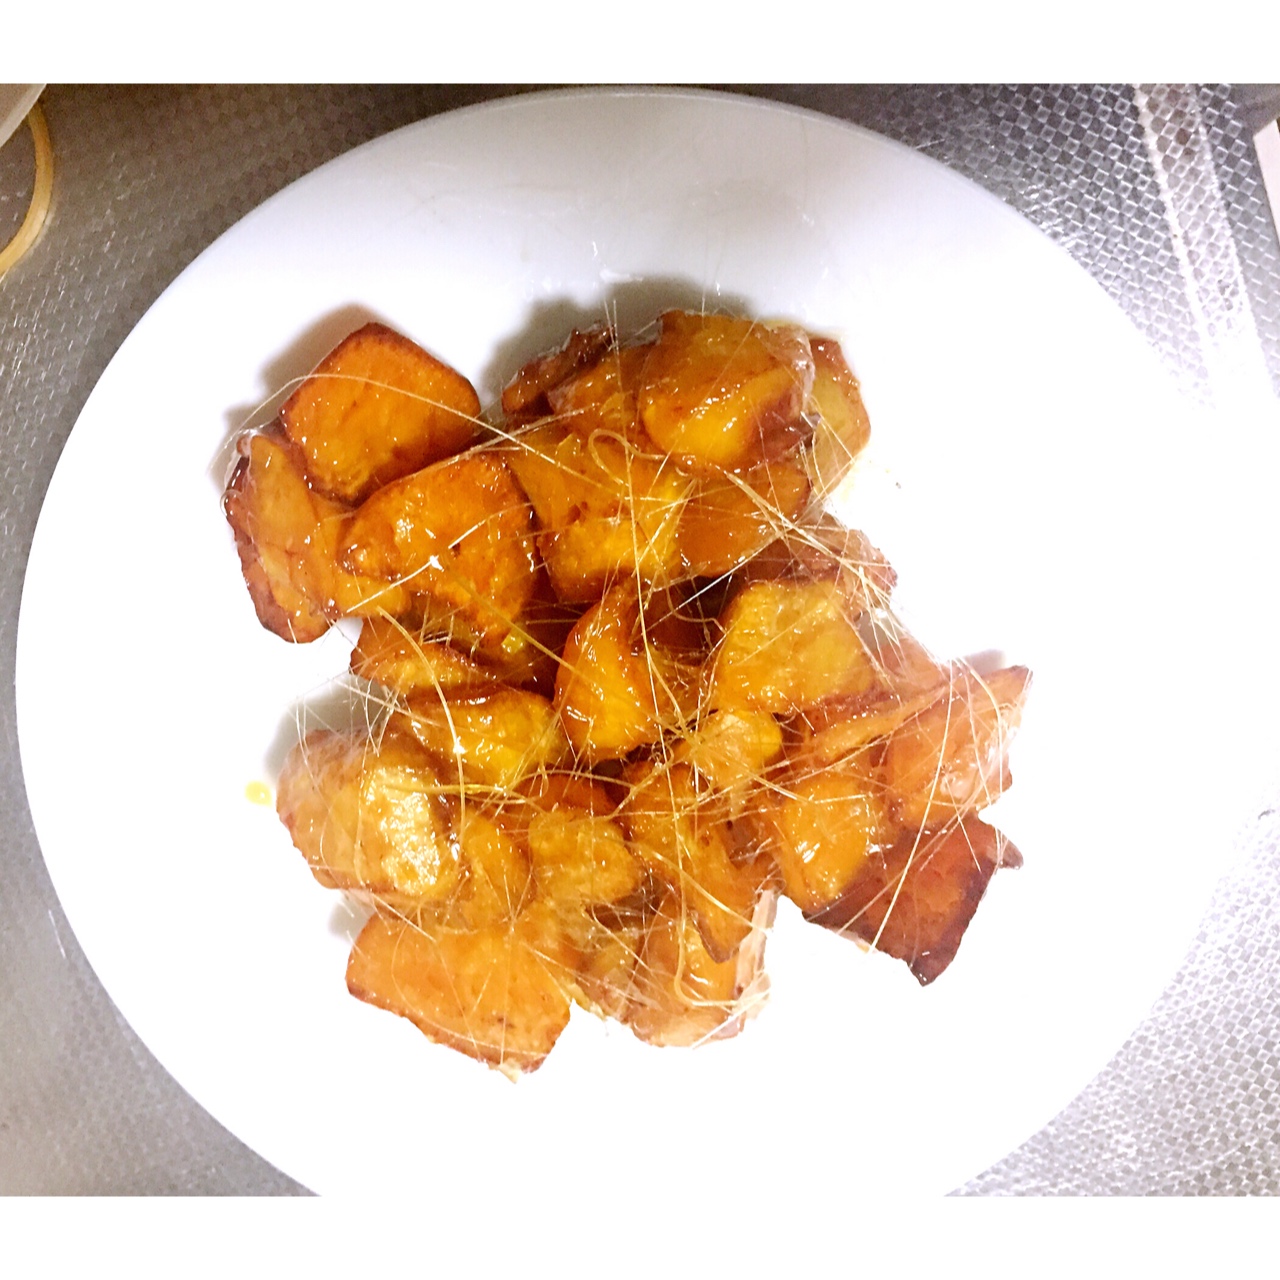 拔丝地瓜  Toffee Sweet Potato